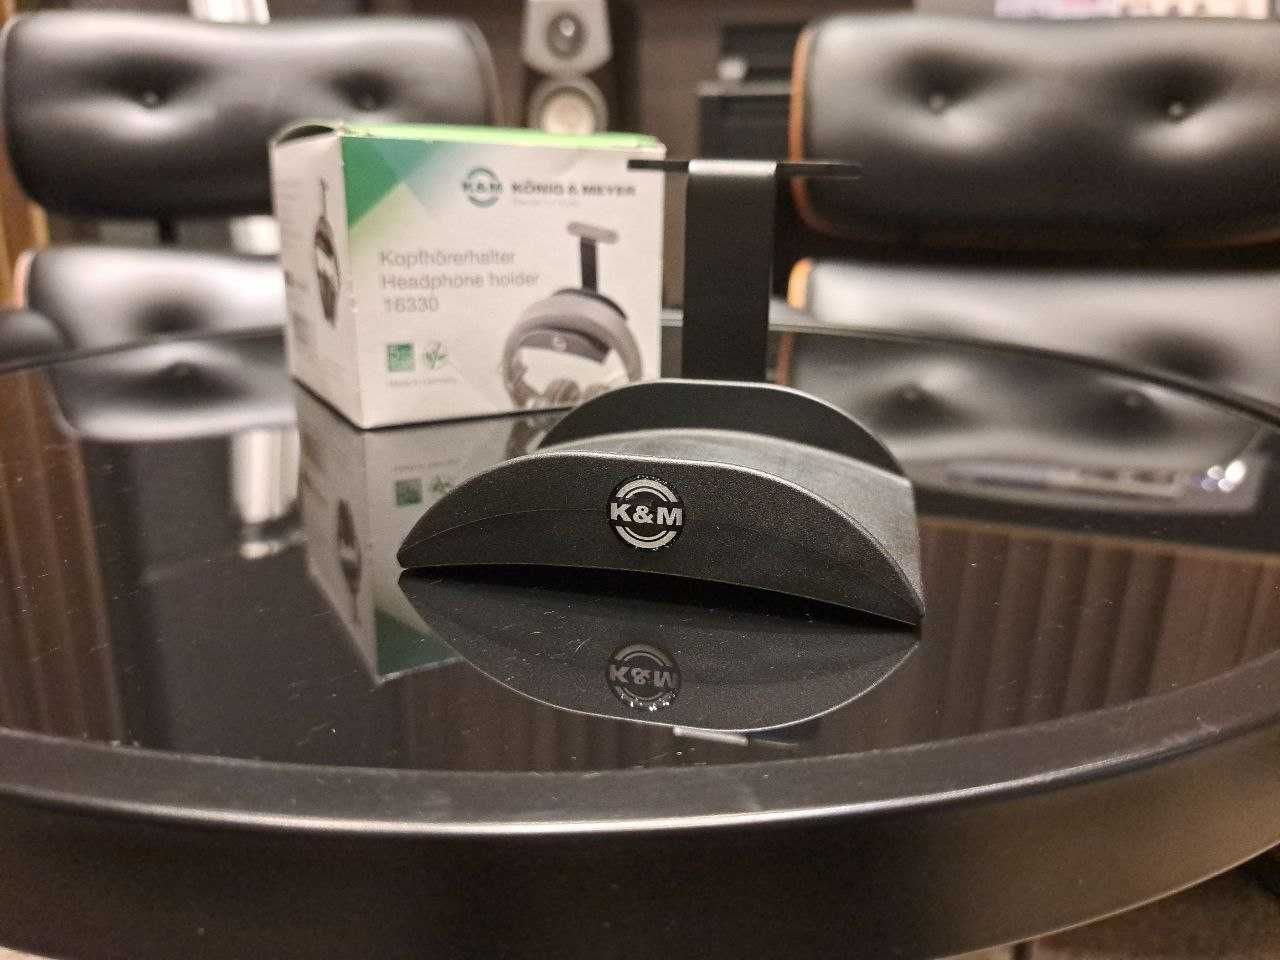 König & Meyer / Держатель для наушников / Headphone holder